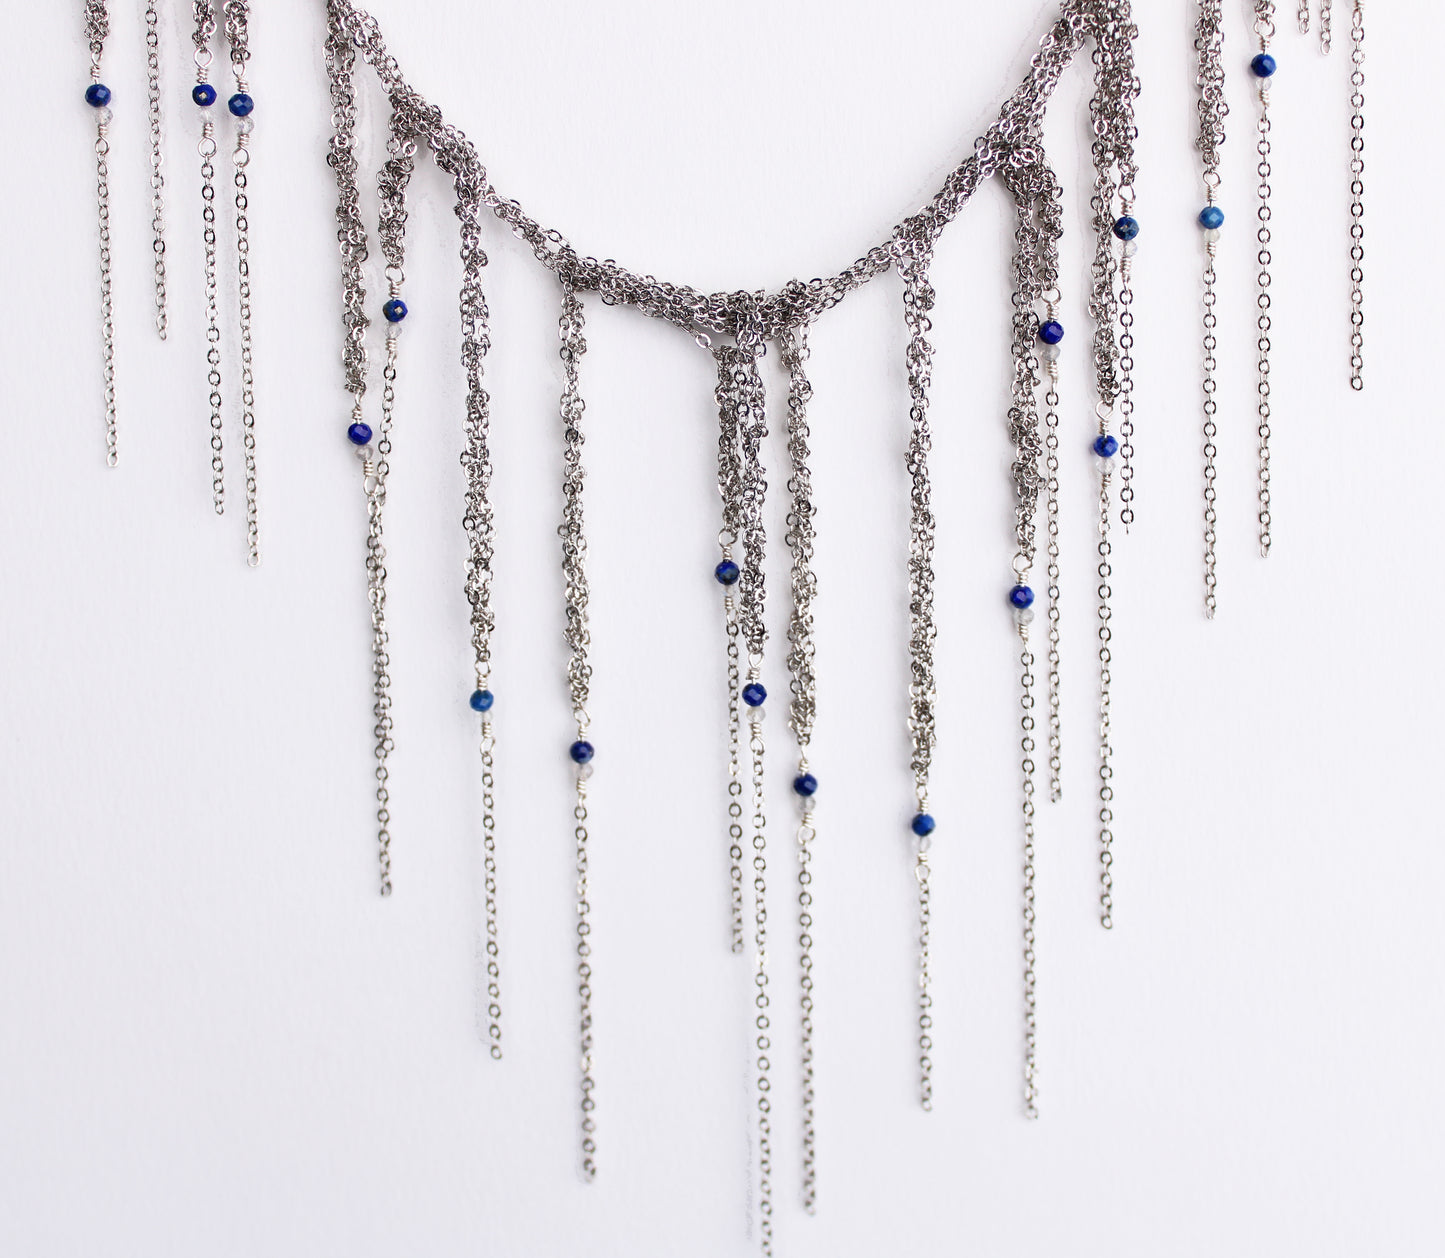 Steel fringe necklace